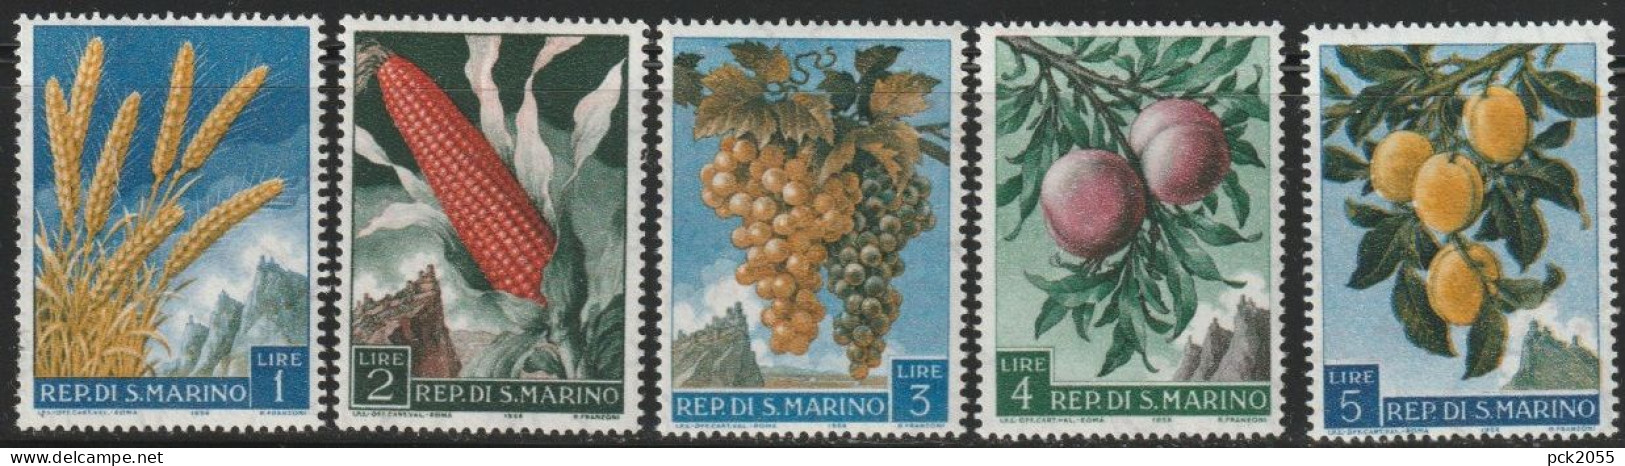 San Marino 1958 Mi Nr. 594 - 598 ** Postfrisch Früchte ( 632) Günstige Versandkosten - Ungebraucht